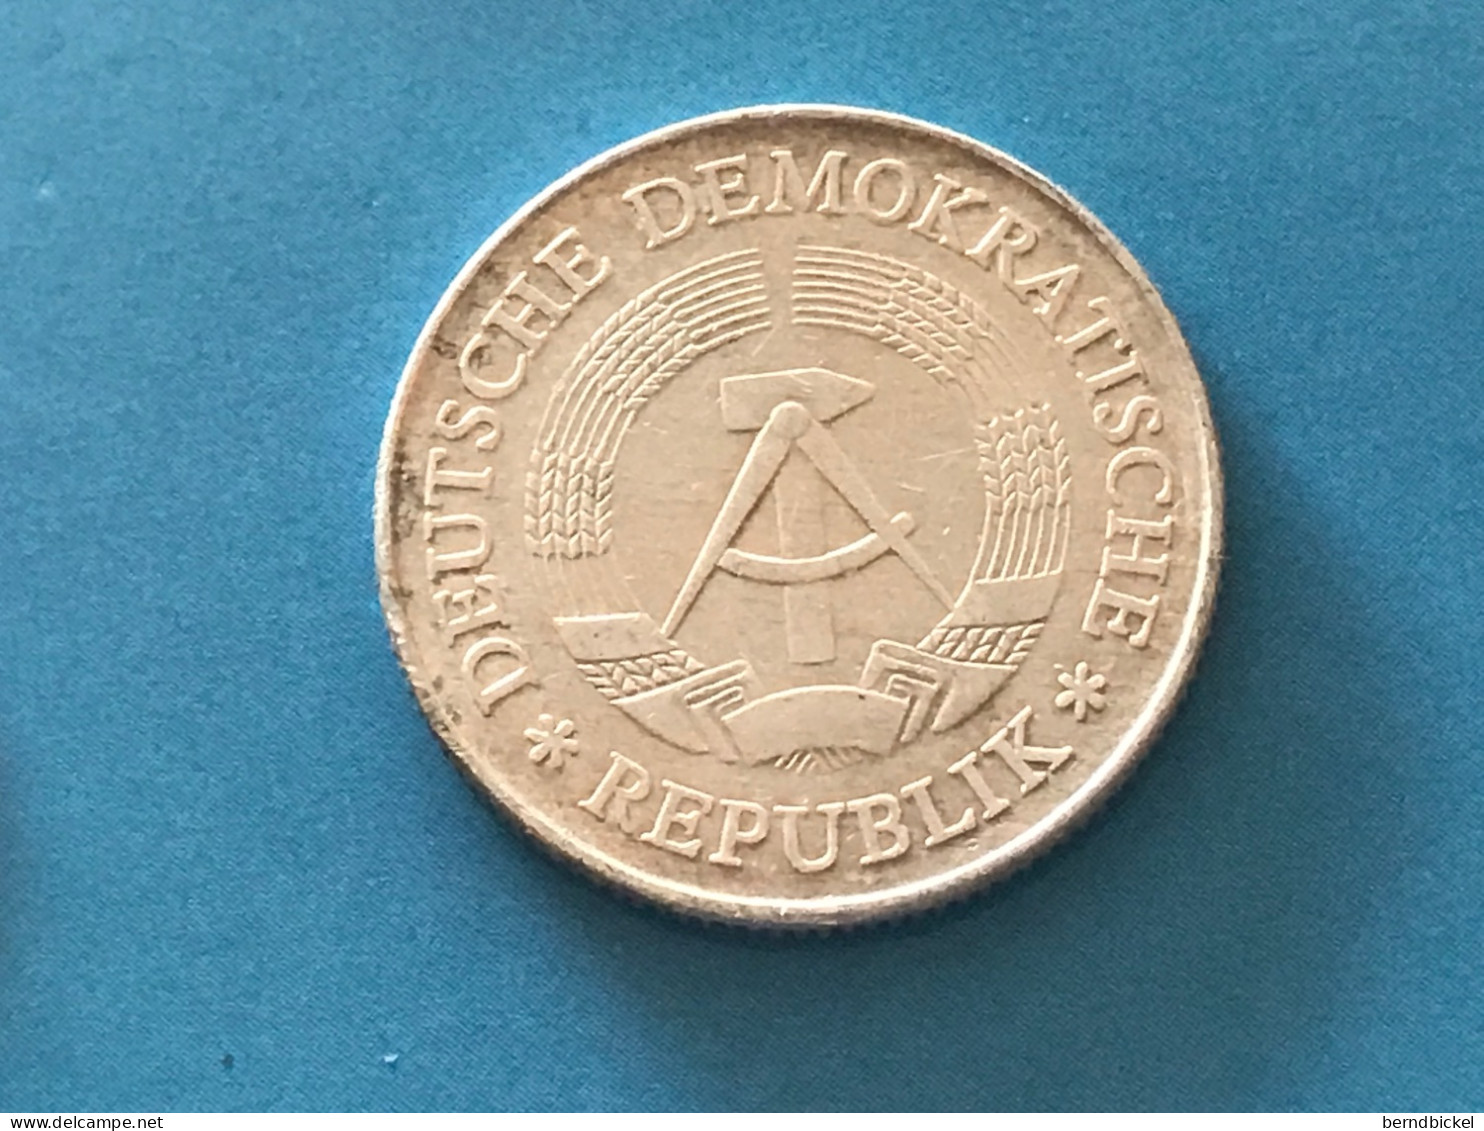 Münze Münzen Umlaufmünze Deutschland DDR 2 Mark 1977 - 2 Mark